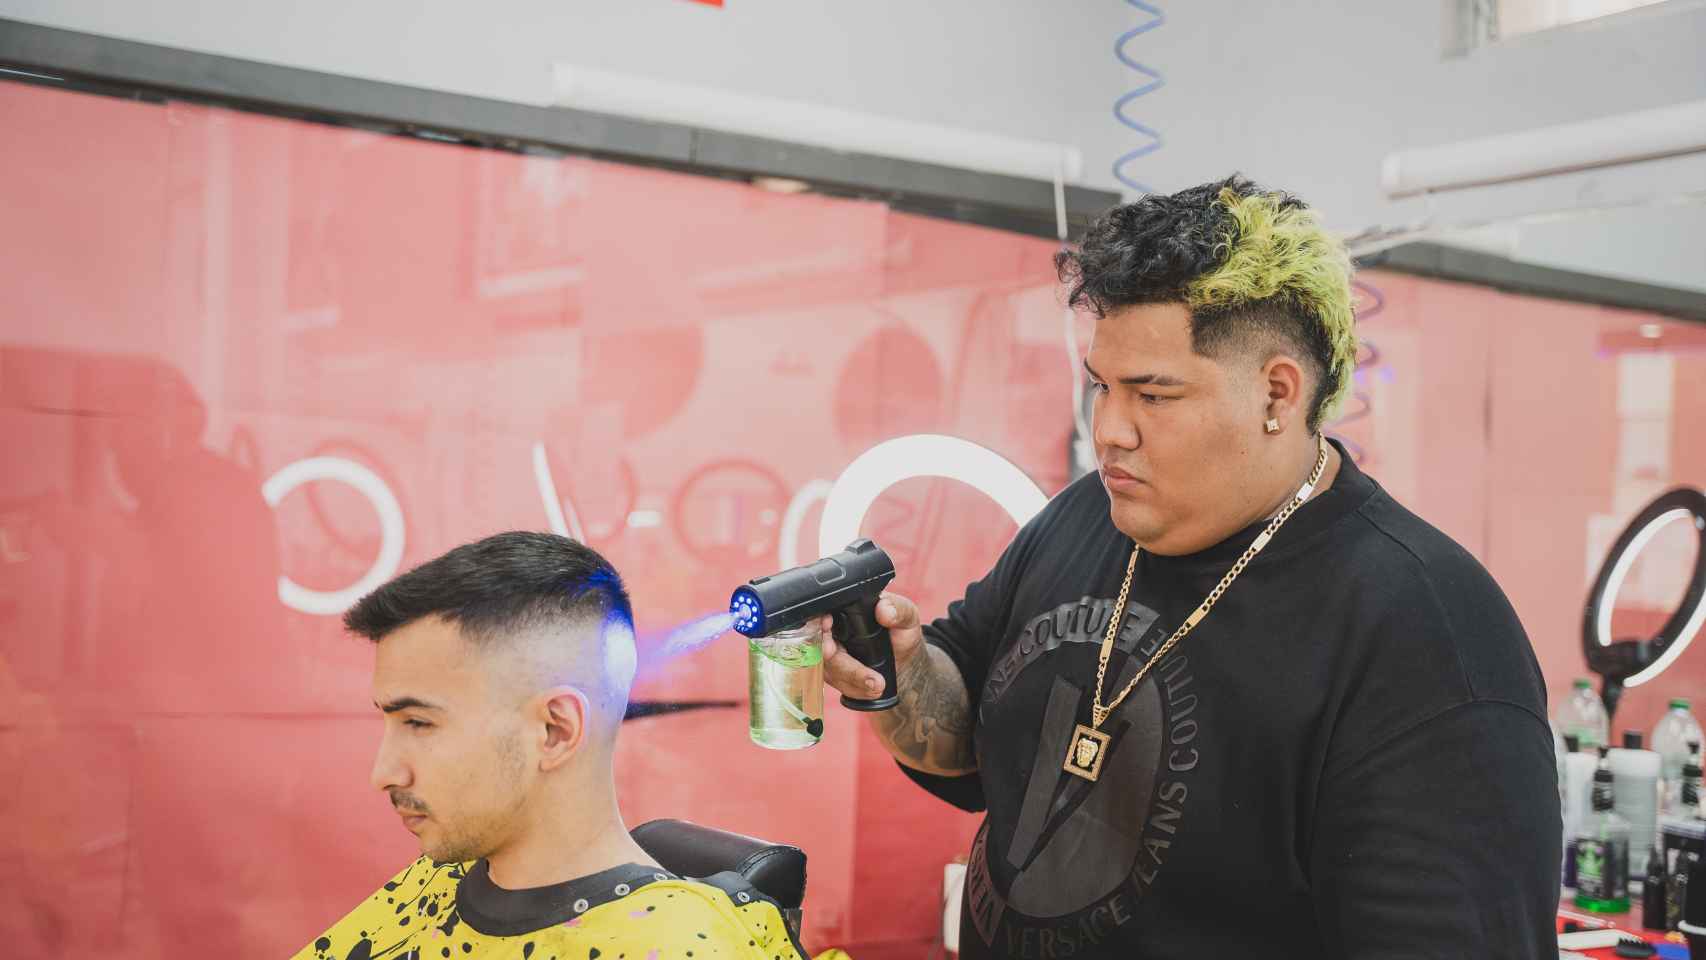 El barbero mojándole el pelo a José Luis, un cliente recién mudado al barrio que iba por primera vez.